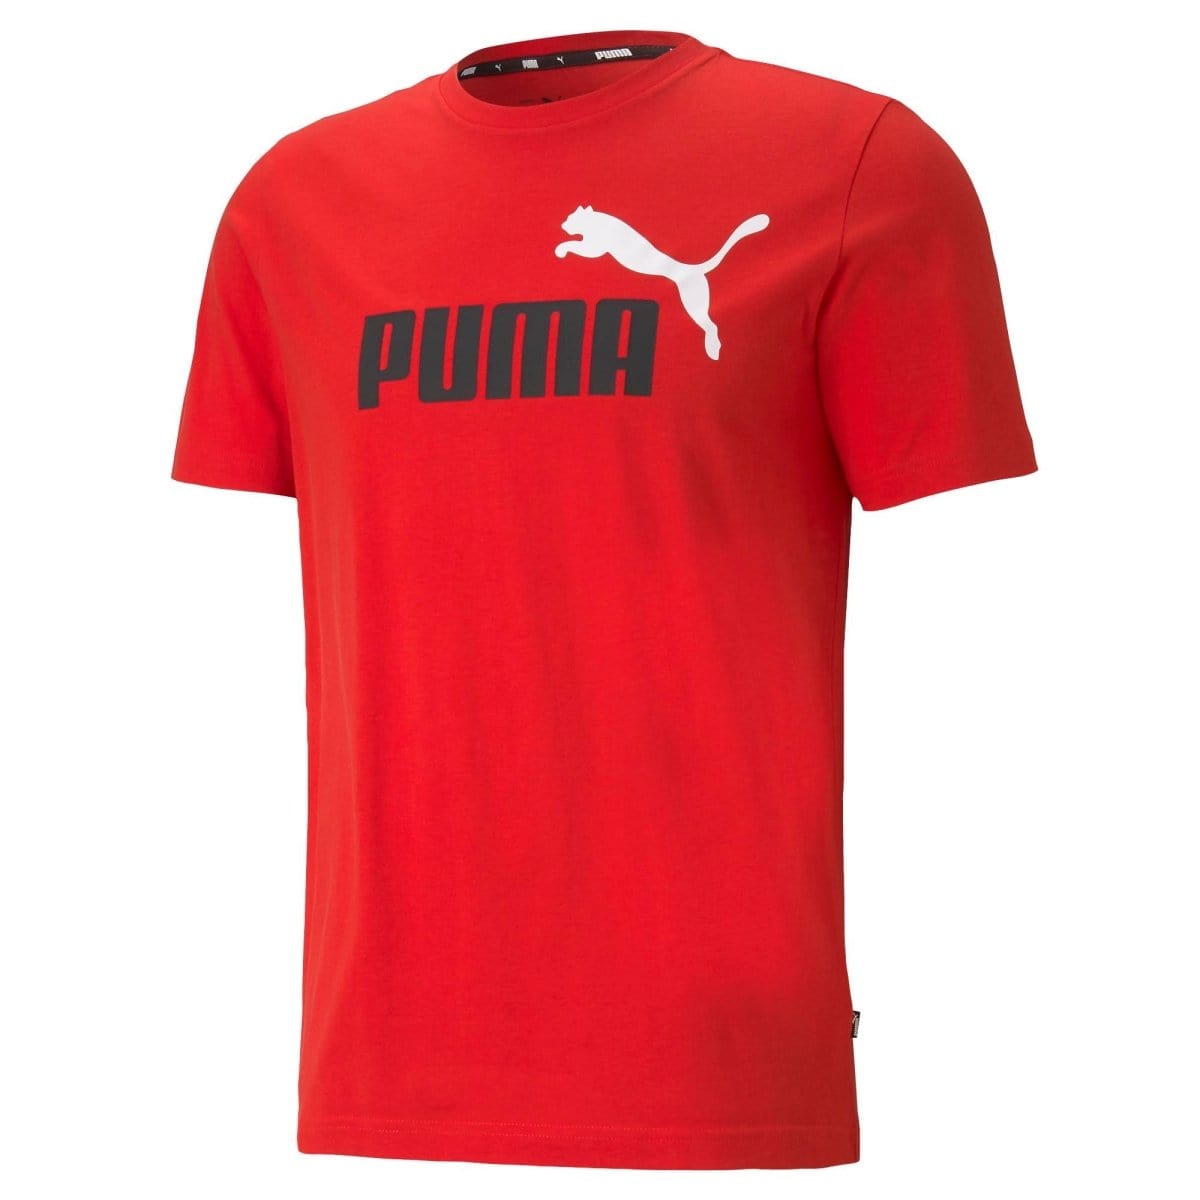 Puma PUMA MEN'S ESSENTIALS+ 2 COLOUR LOGO RED TEE - INSPORT